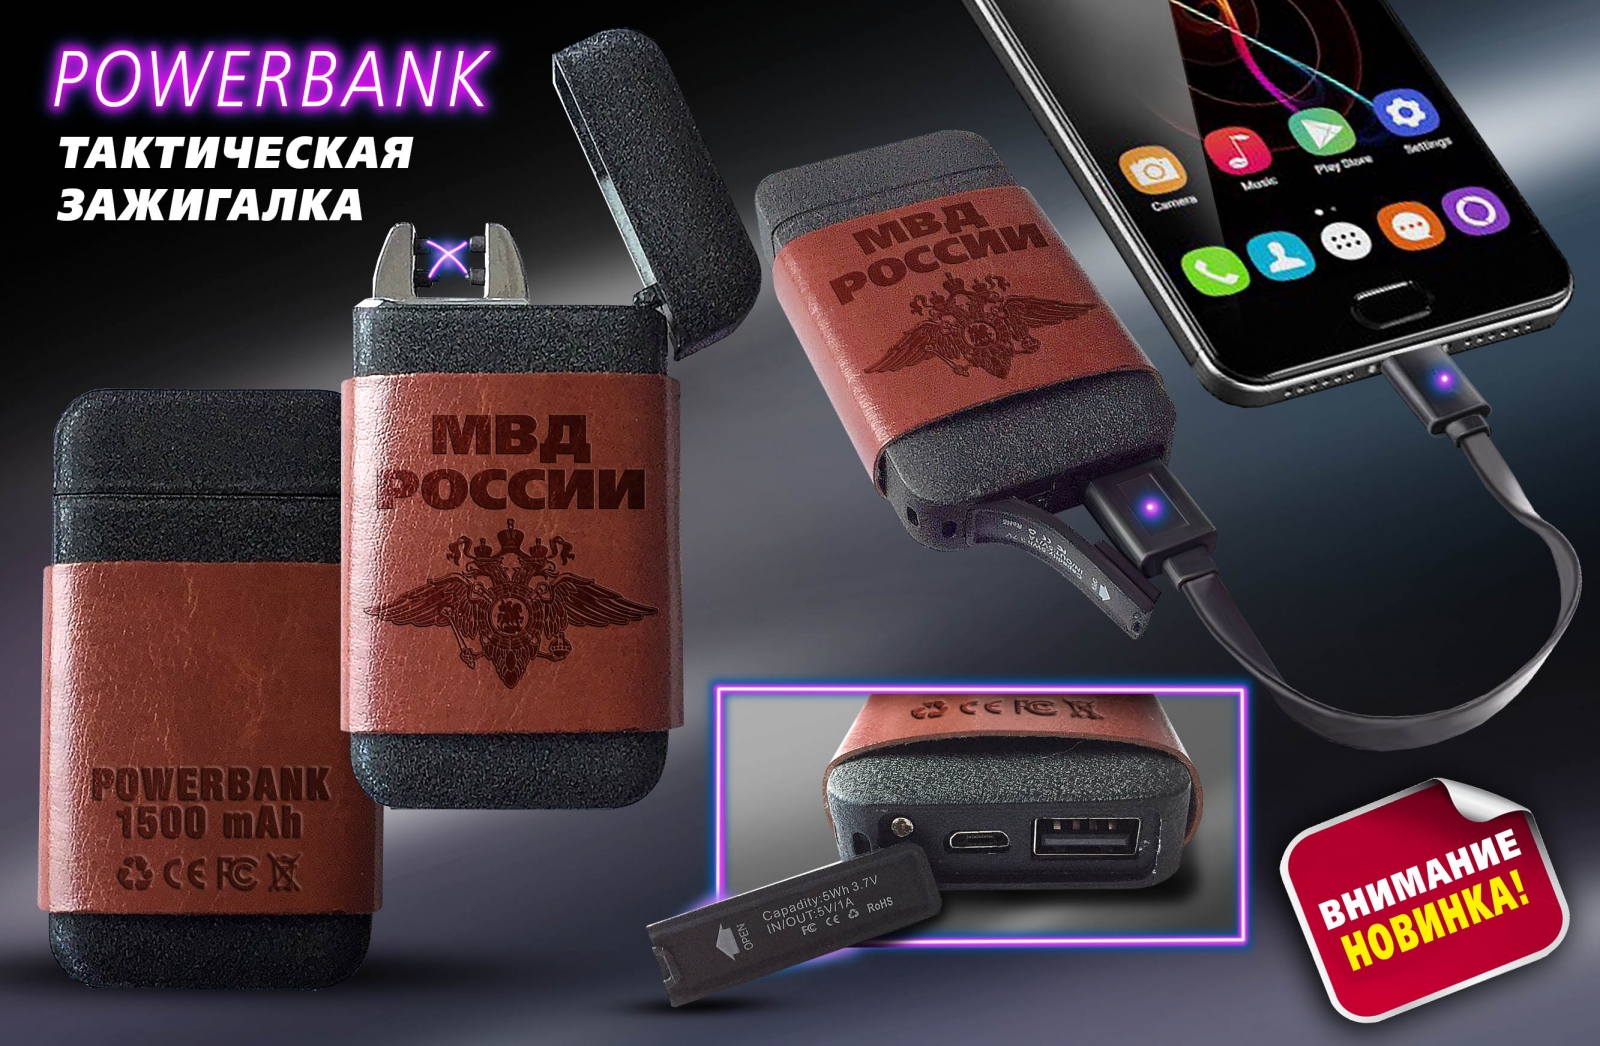 Тактическая зажигалка "МВД" с опцией Powerbank 